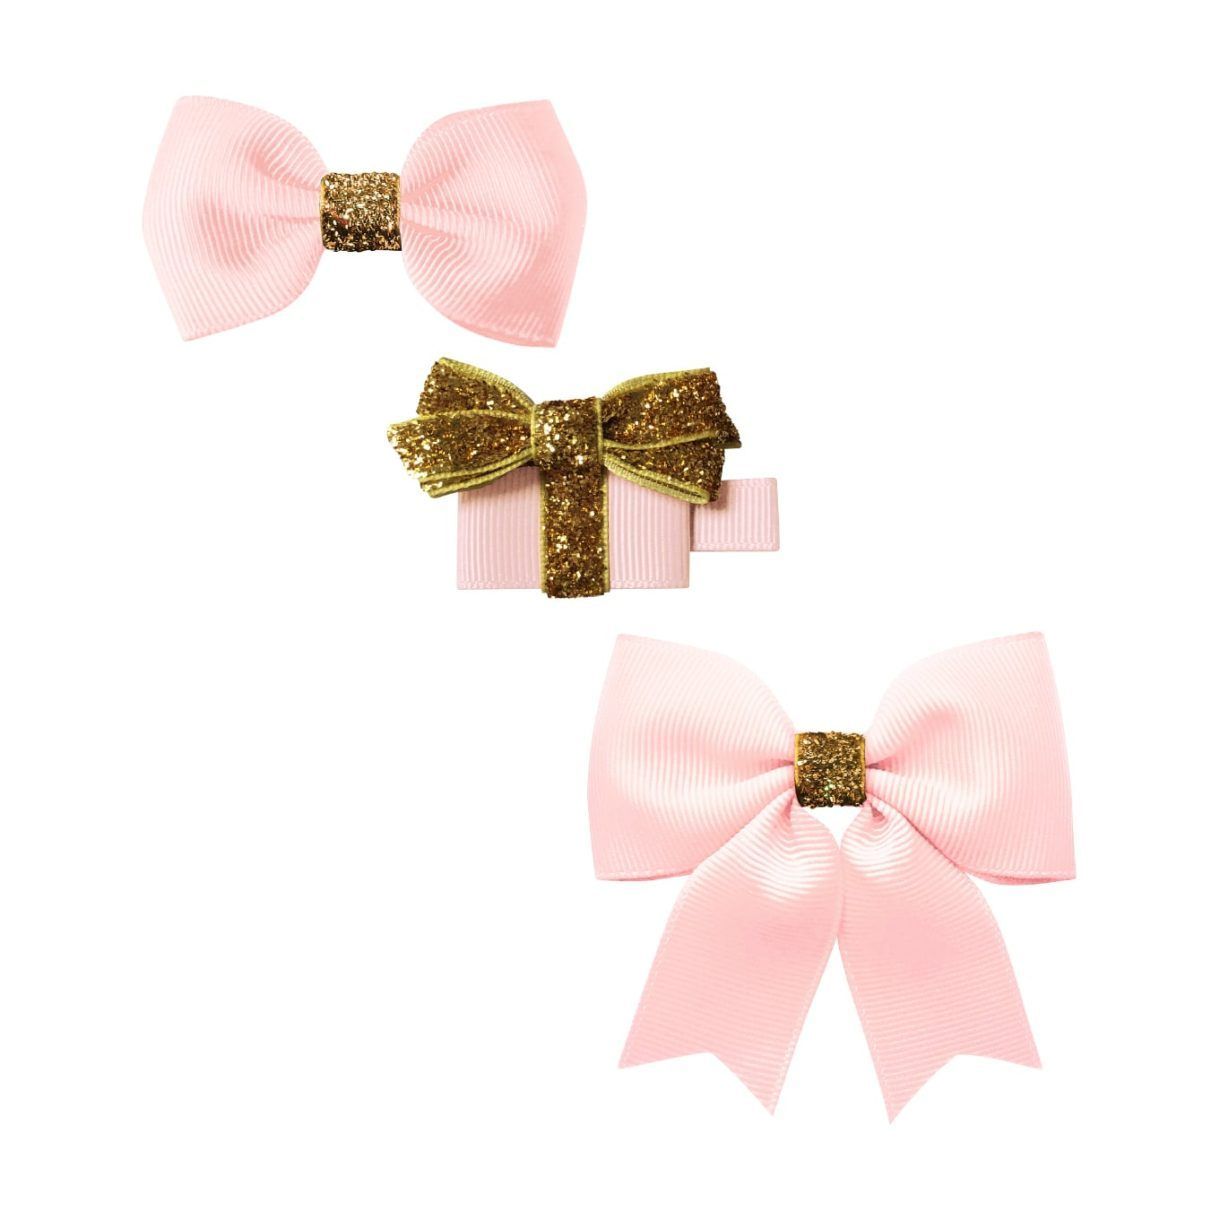 Набор заколок A250 "Бантики и подарок", коллекция "Classic Christmas", светло-розовый с золотистым